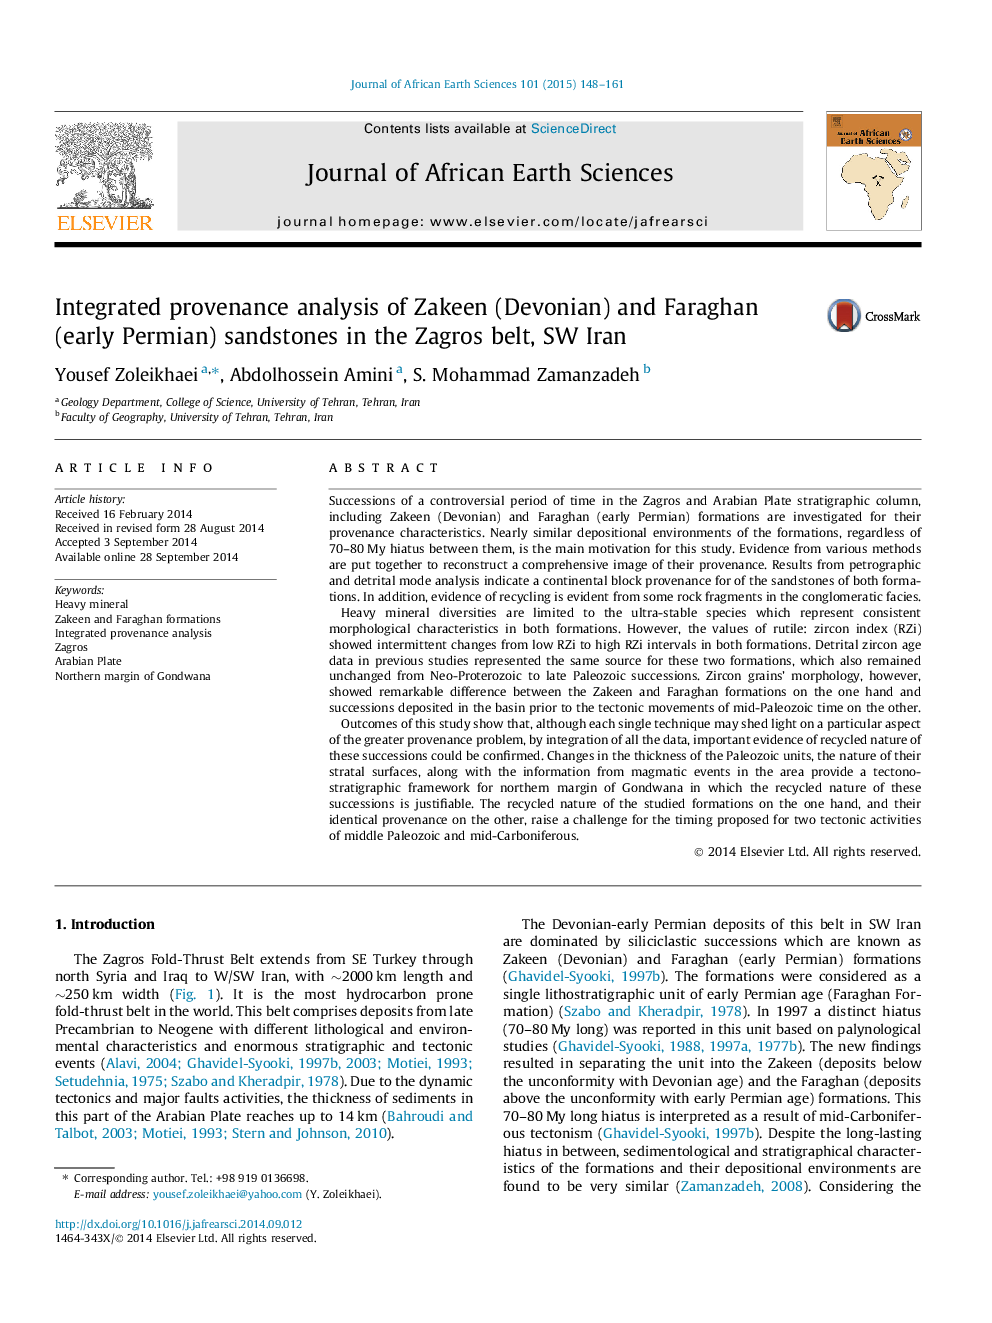 تجزیه و تحلیل مجتمع شن و ماسه سنگ زاکین (دونین) و فرجان (اولیه پرمین) در کمربند زاگرس، سوئیس 